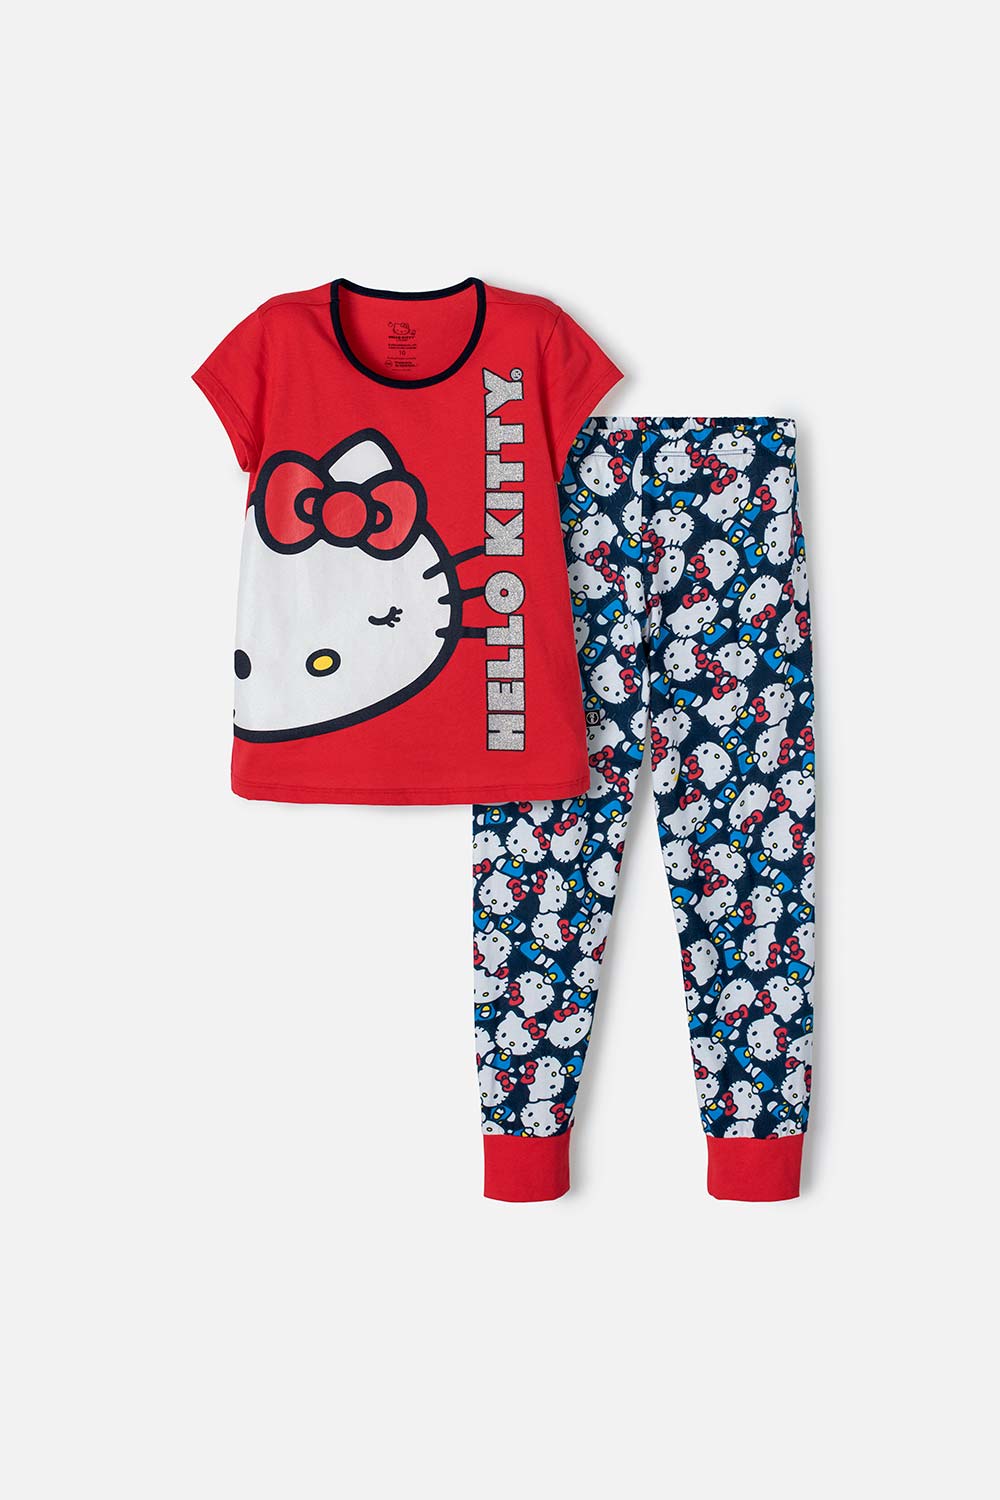 Pijama de Hello Kitty roja y azul de pantalón largo para niña 4-0